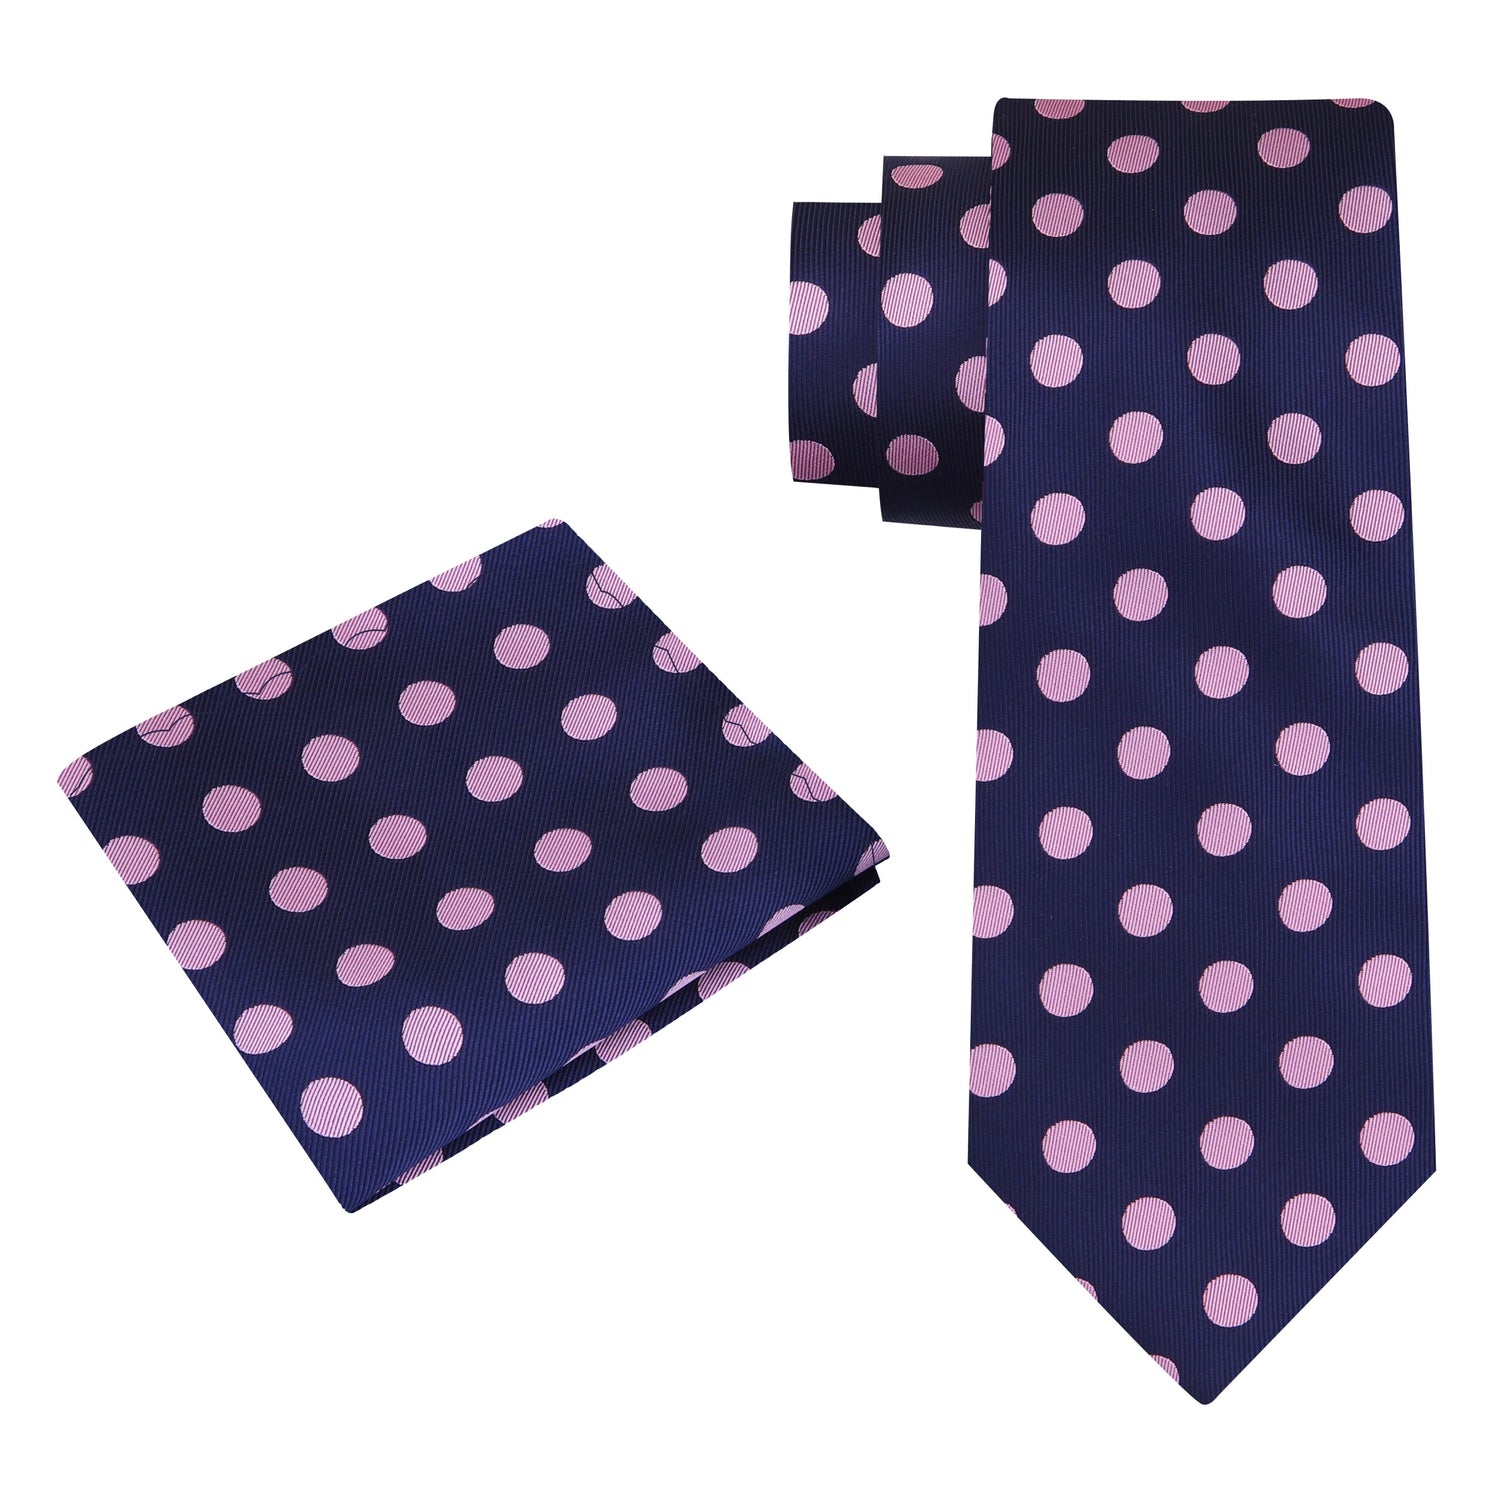 Alt view: A Dark Blue, Pink Dot Pattern Silk Necktie, Matching Pocket Square